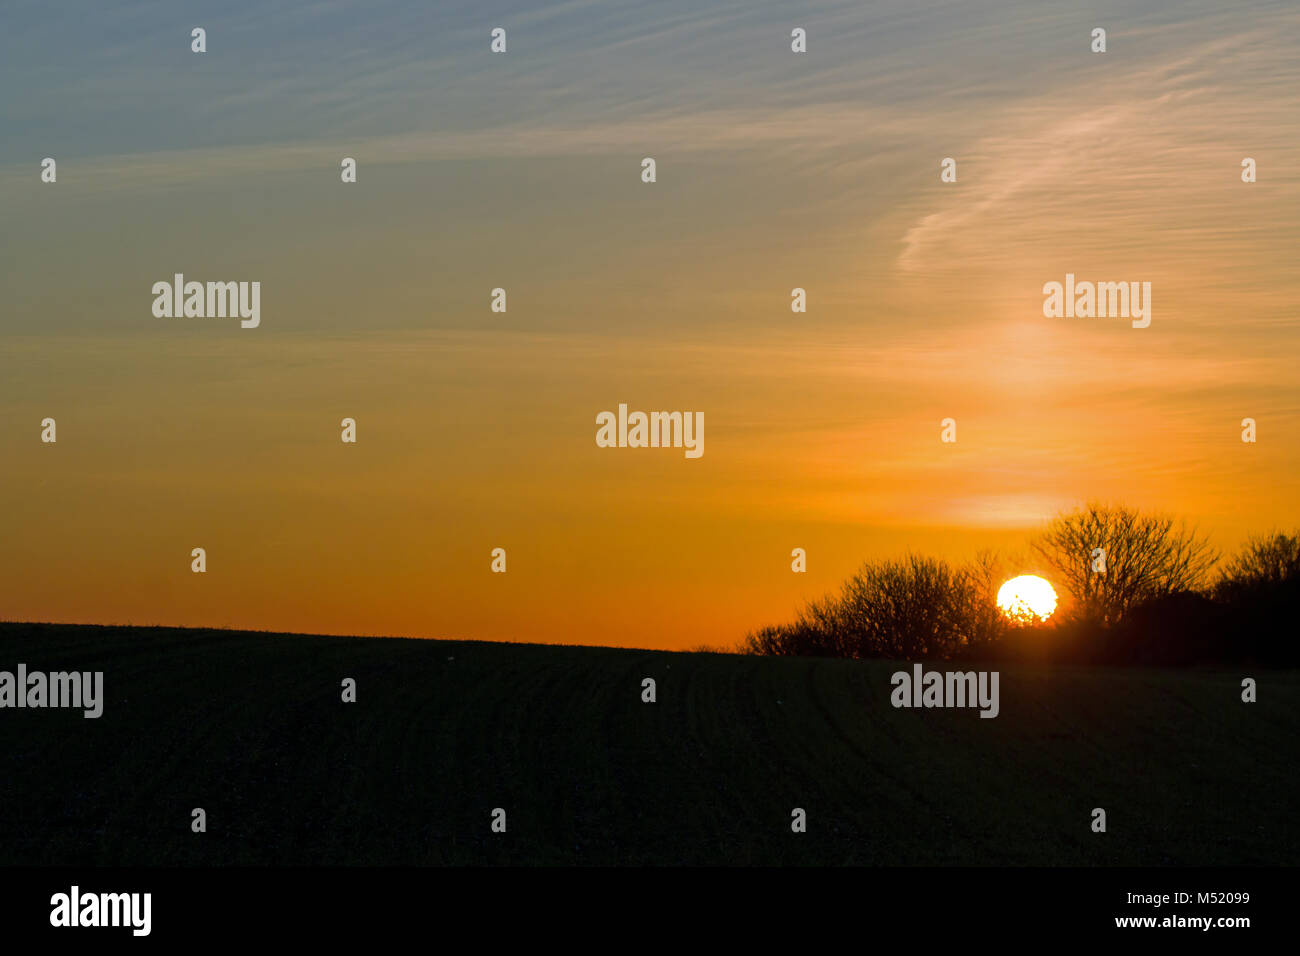 Sunset, Sun Pillar and Copy Space Stock Photo